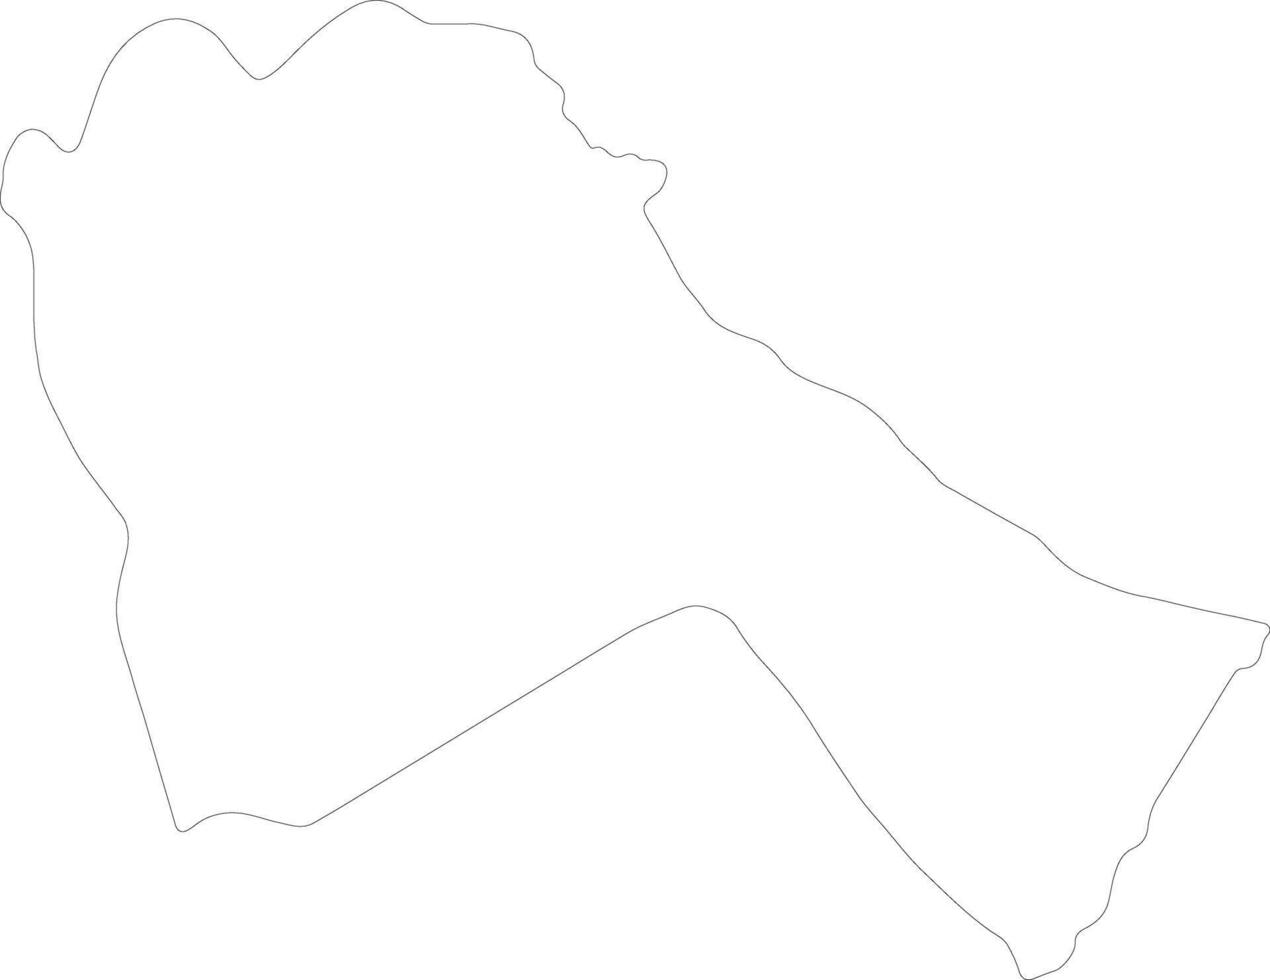 sennar sudan översikt Karta vektor